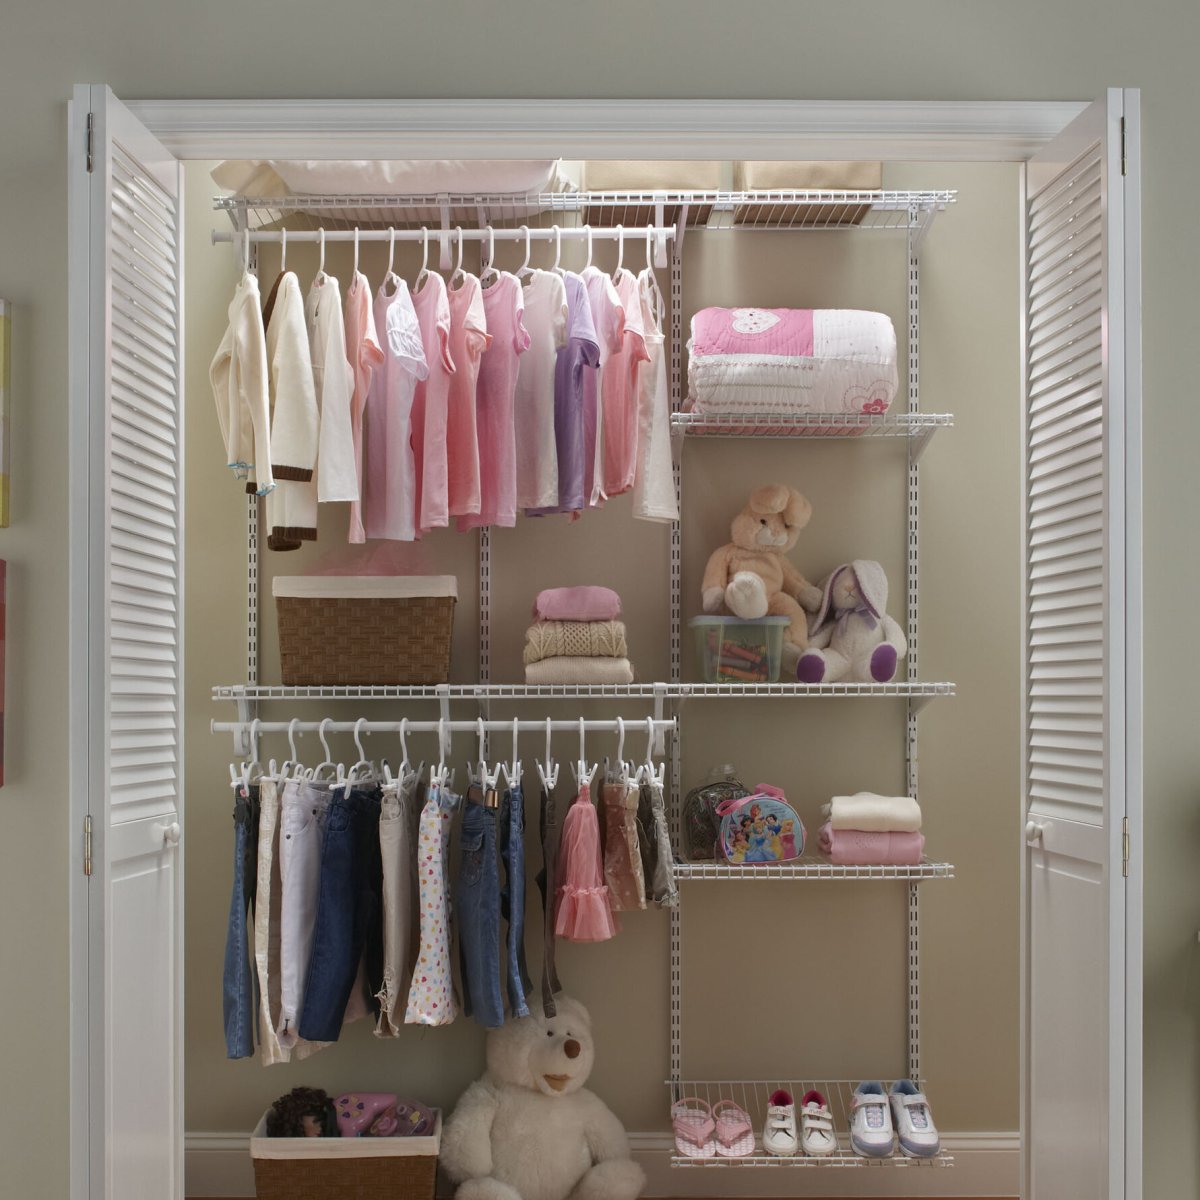 Советы по организации гардероба вашего ребенка: максимальное использование пространства и функциональности